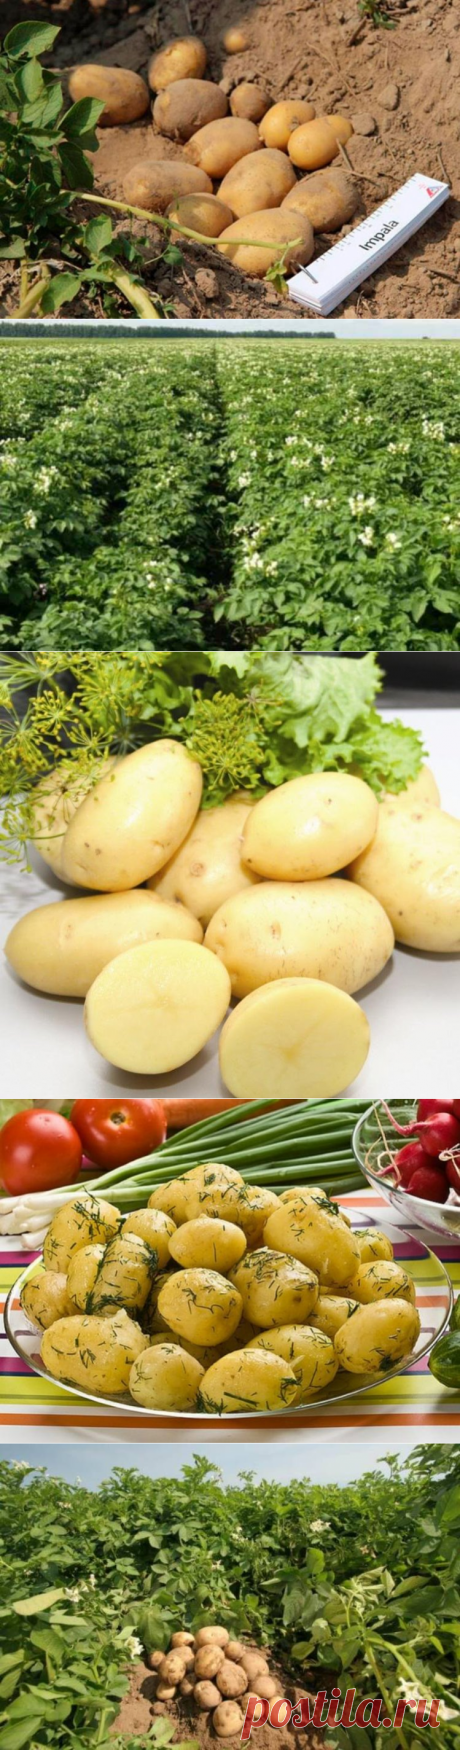 Картофель Импала характеристики и описание сорта с отзывами и фото, вкусовые качества, урожайность, посадка и уход